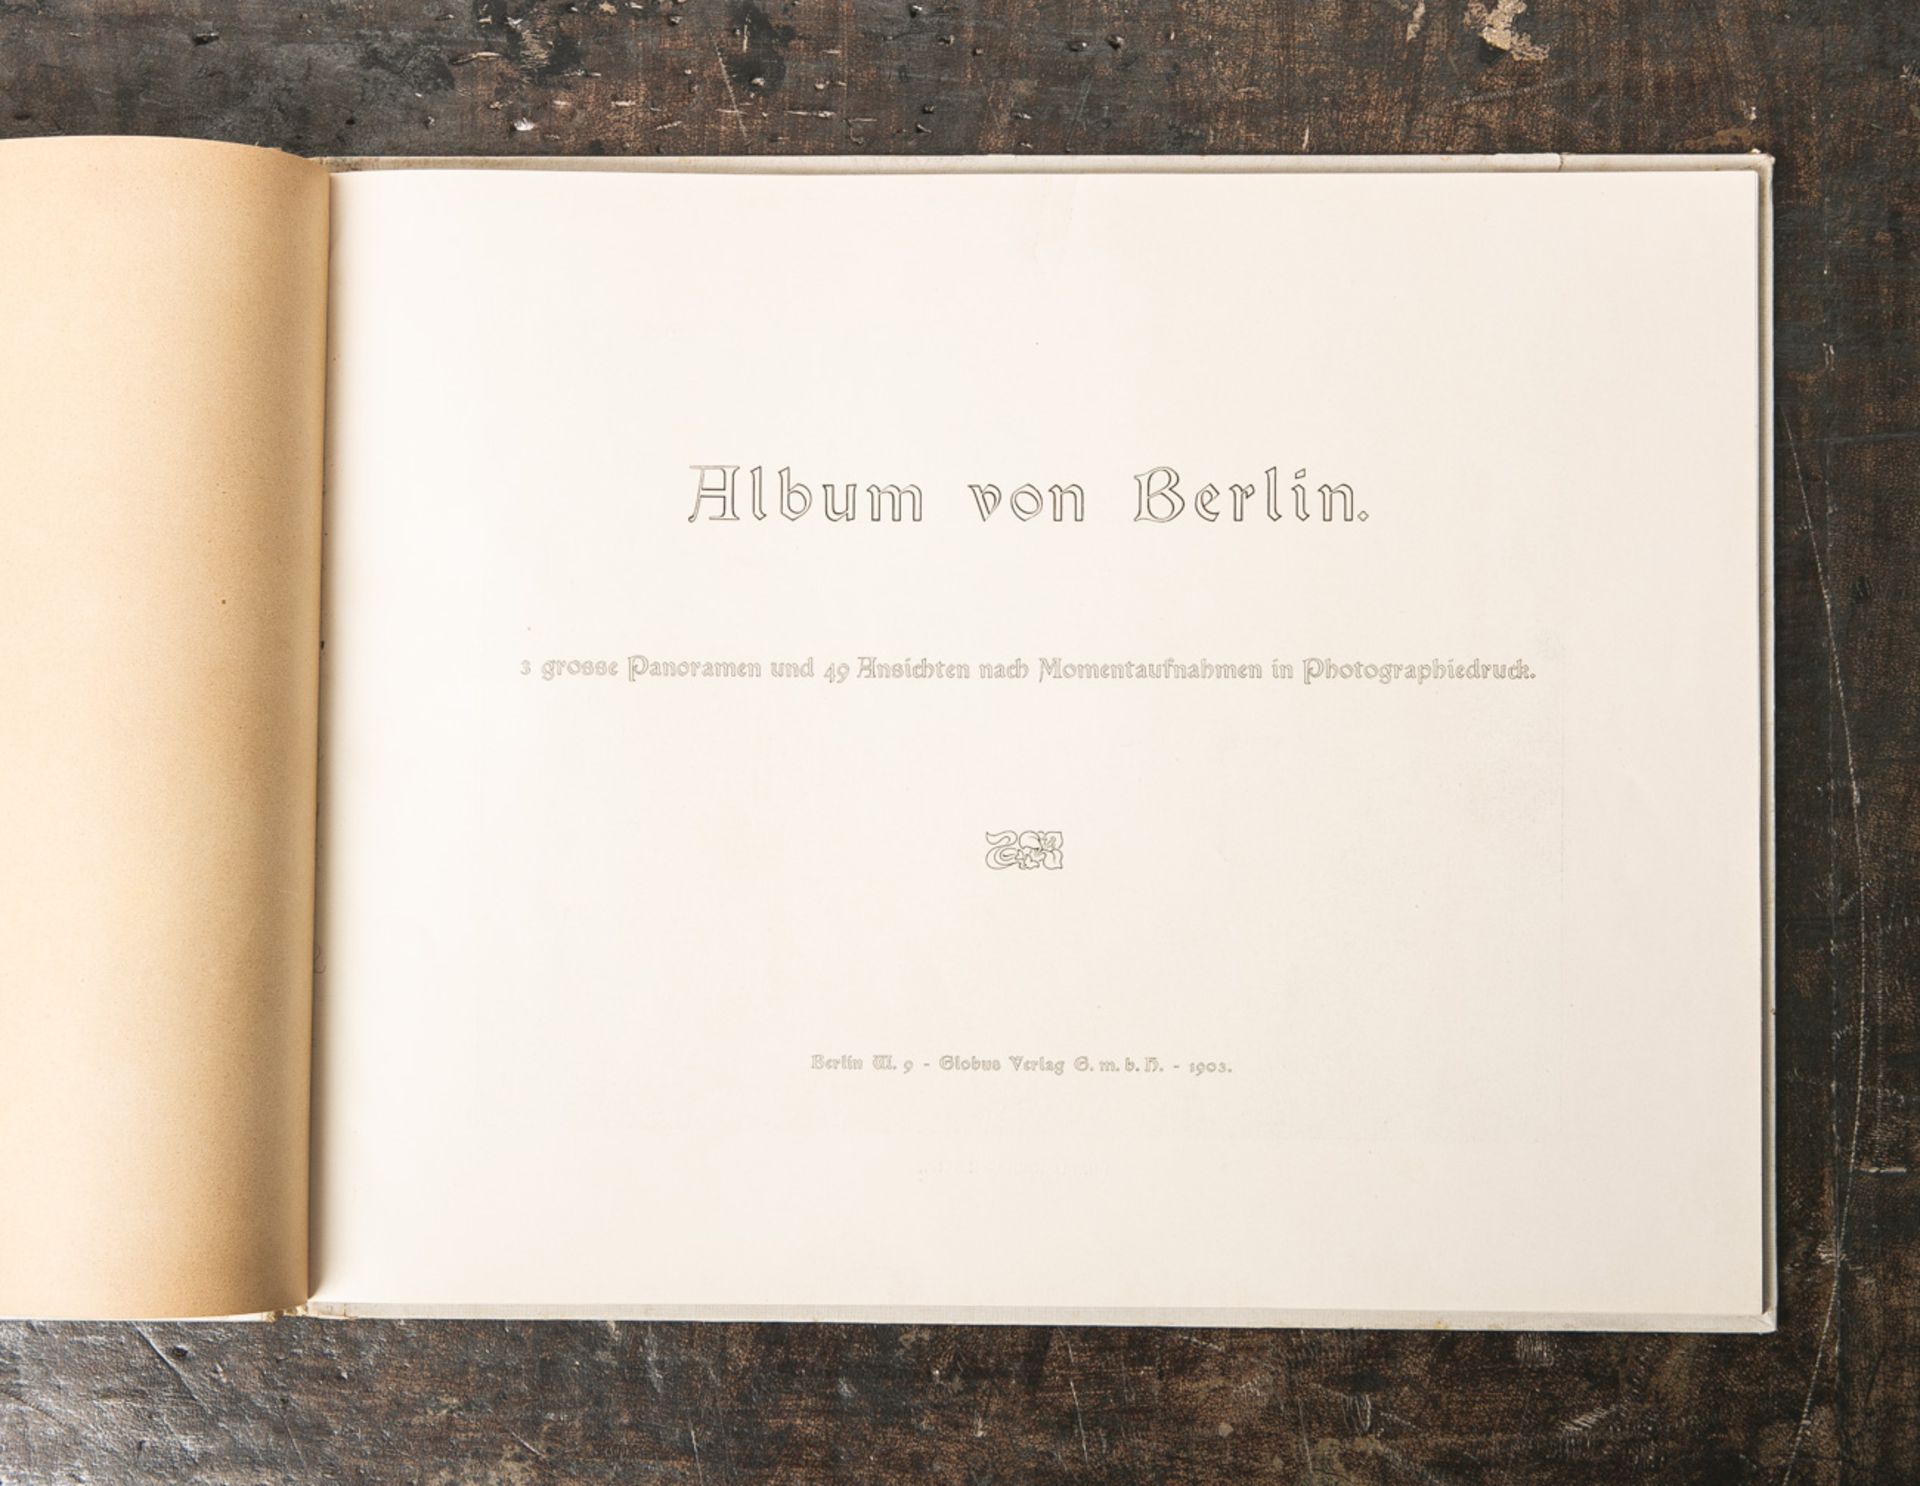 "Album von Berlin-3 große Panoramen und 49 Ansichten nach Momentaufnahmen in - Image 2 of 2